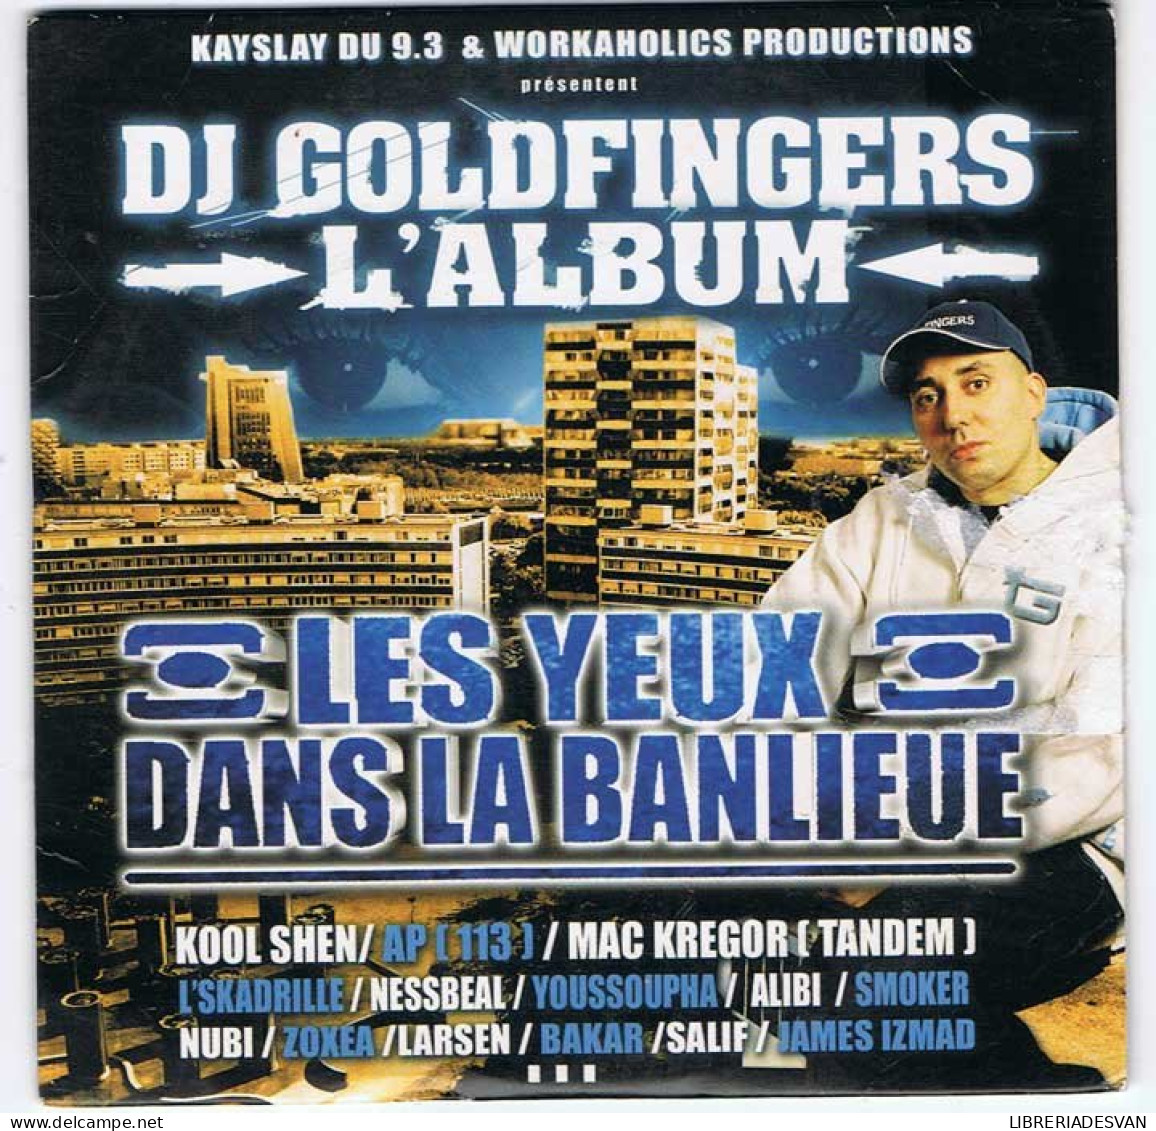 DJ Goldfingers - L'Album. Les Yeux Dans La Banlieue. CD - Dance, Techno & House